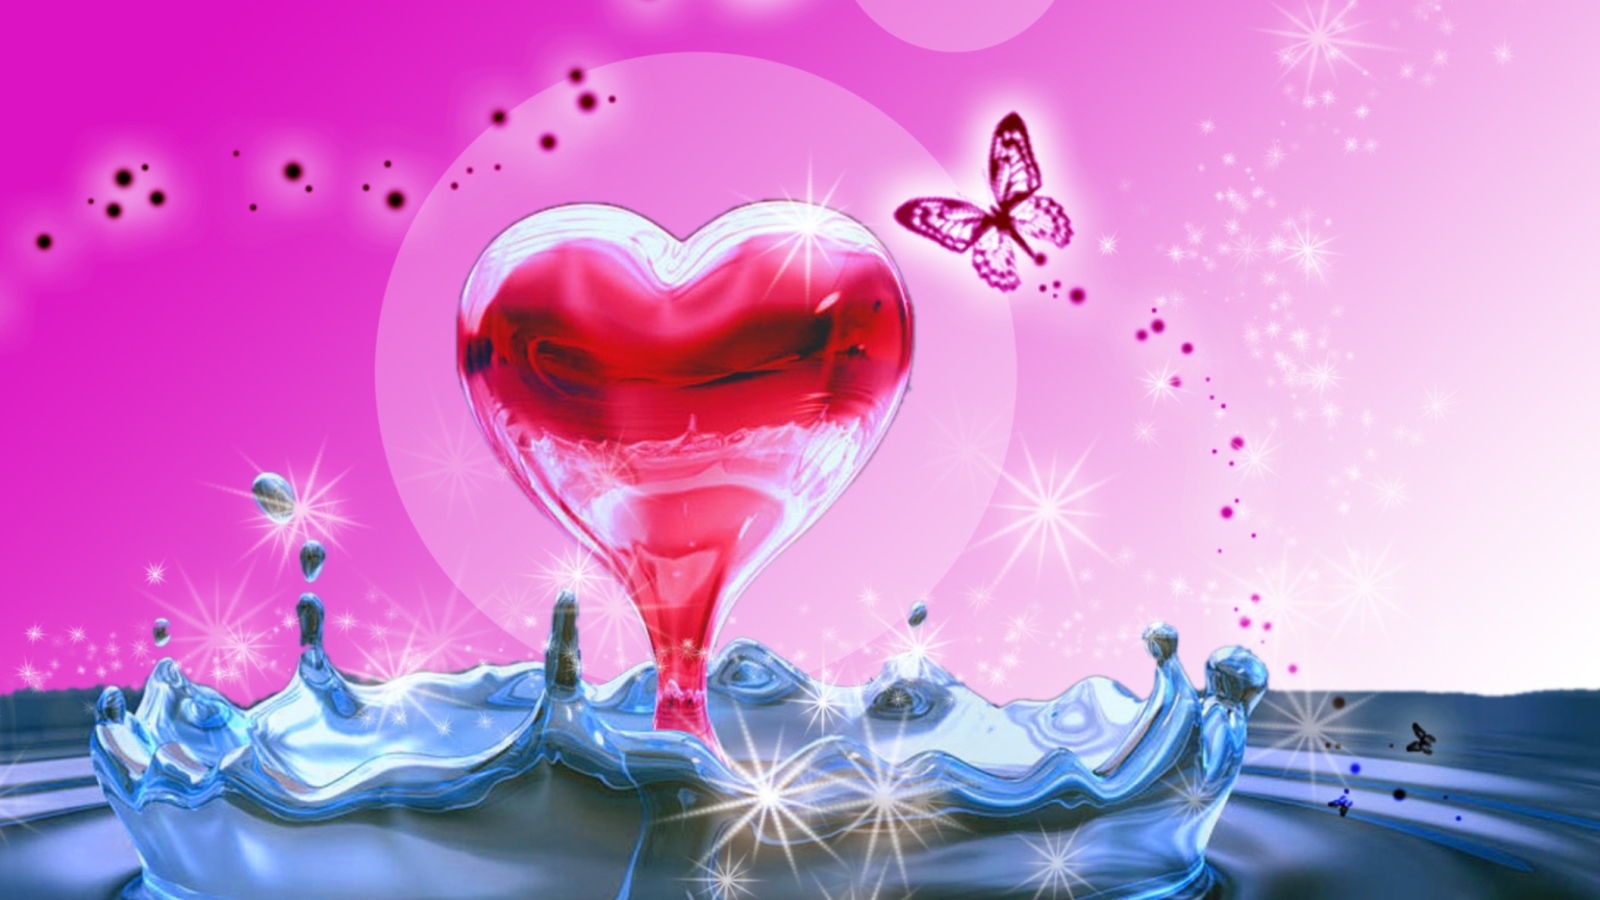 3D Heart In Water wallpaper 1600x900